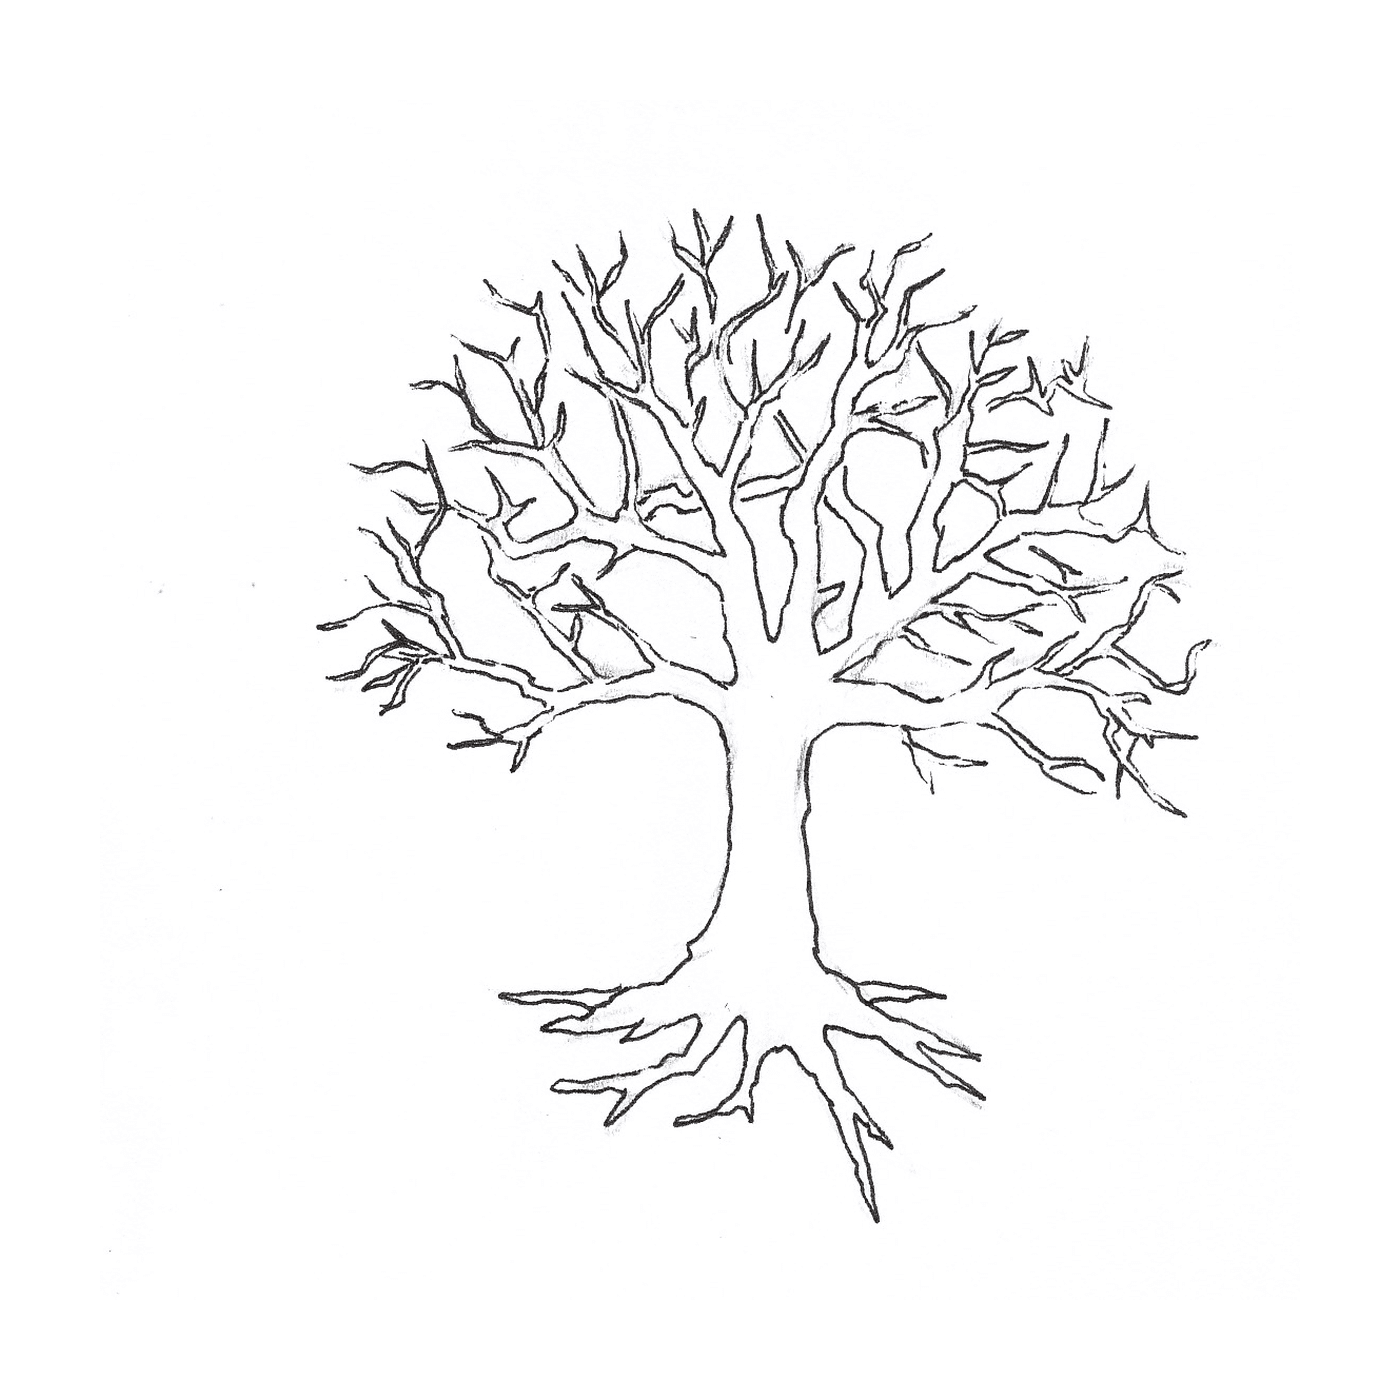  Ein nackter Baum ohne Blätter 